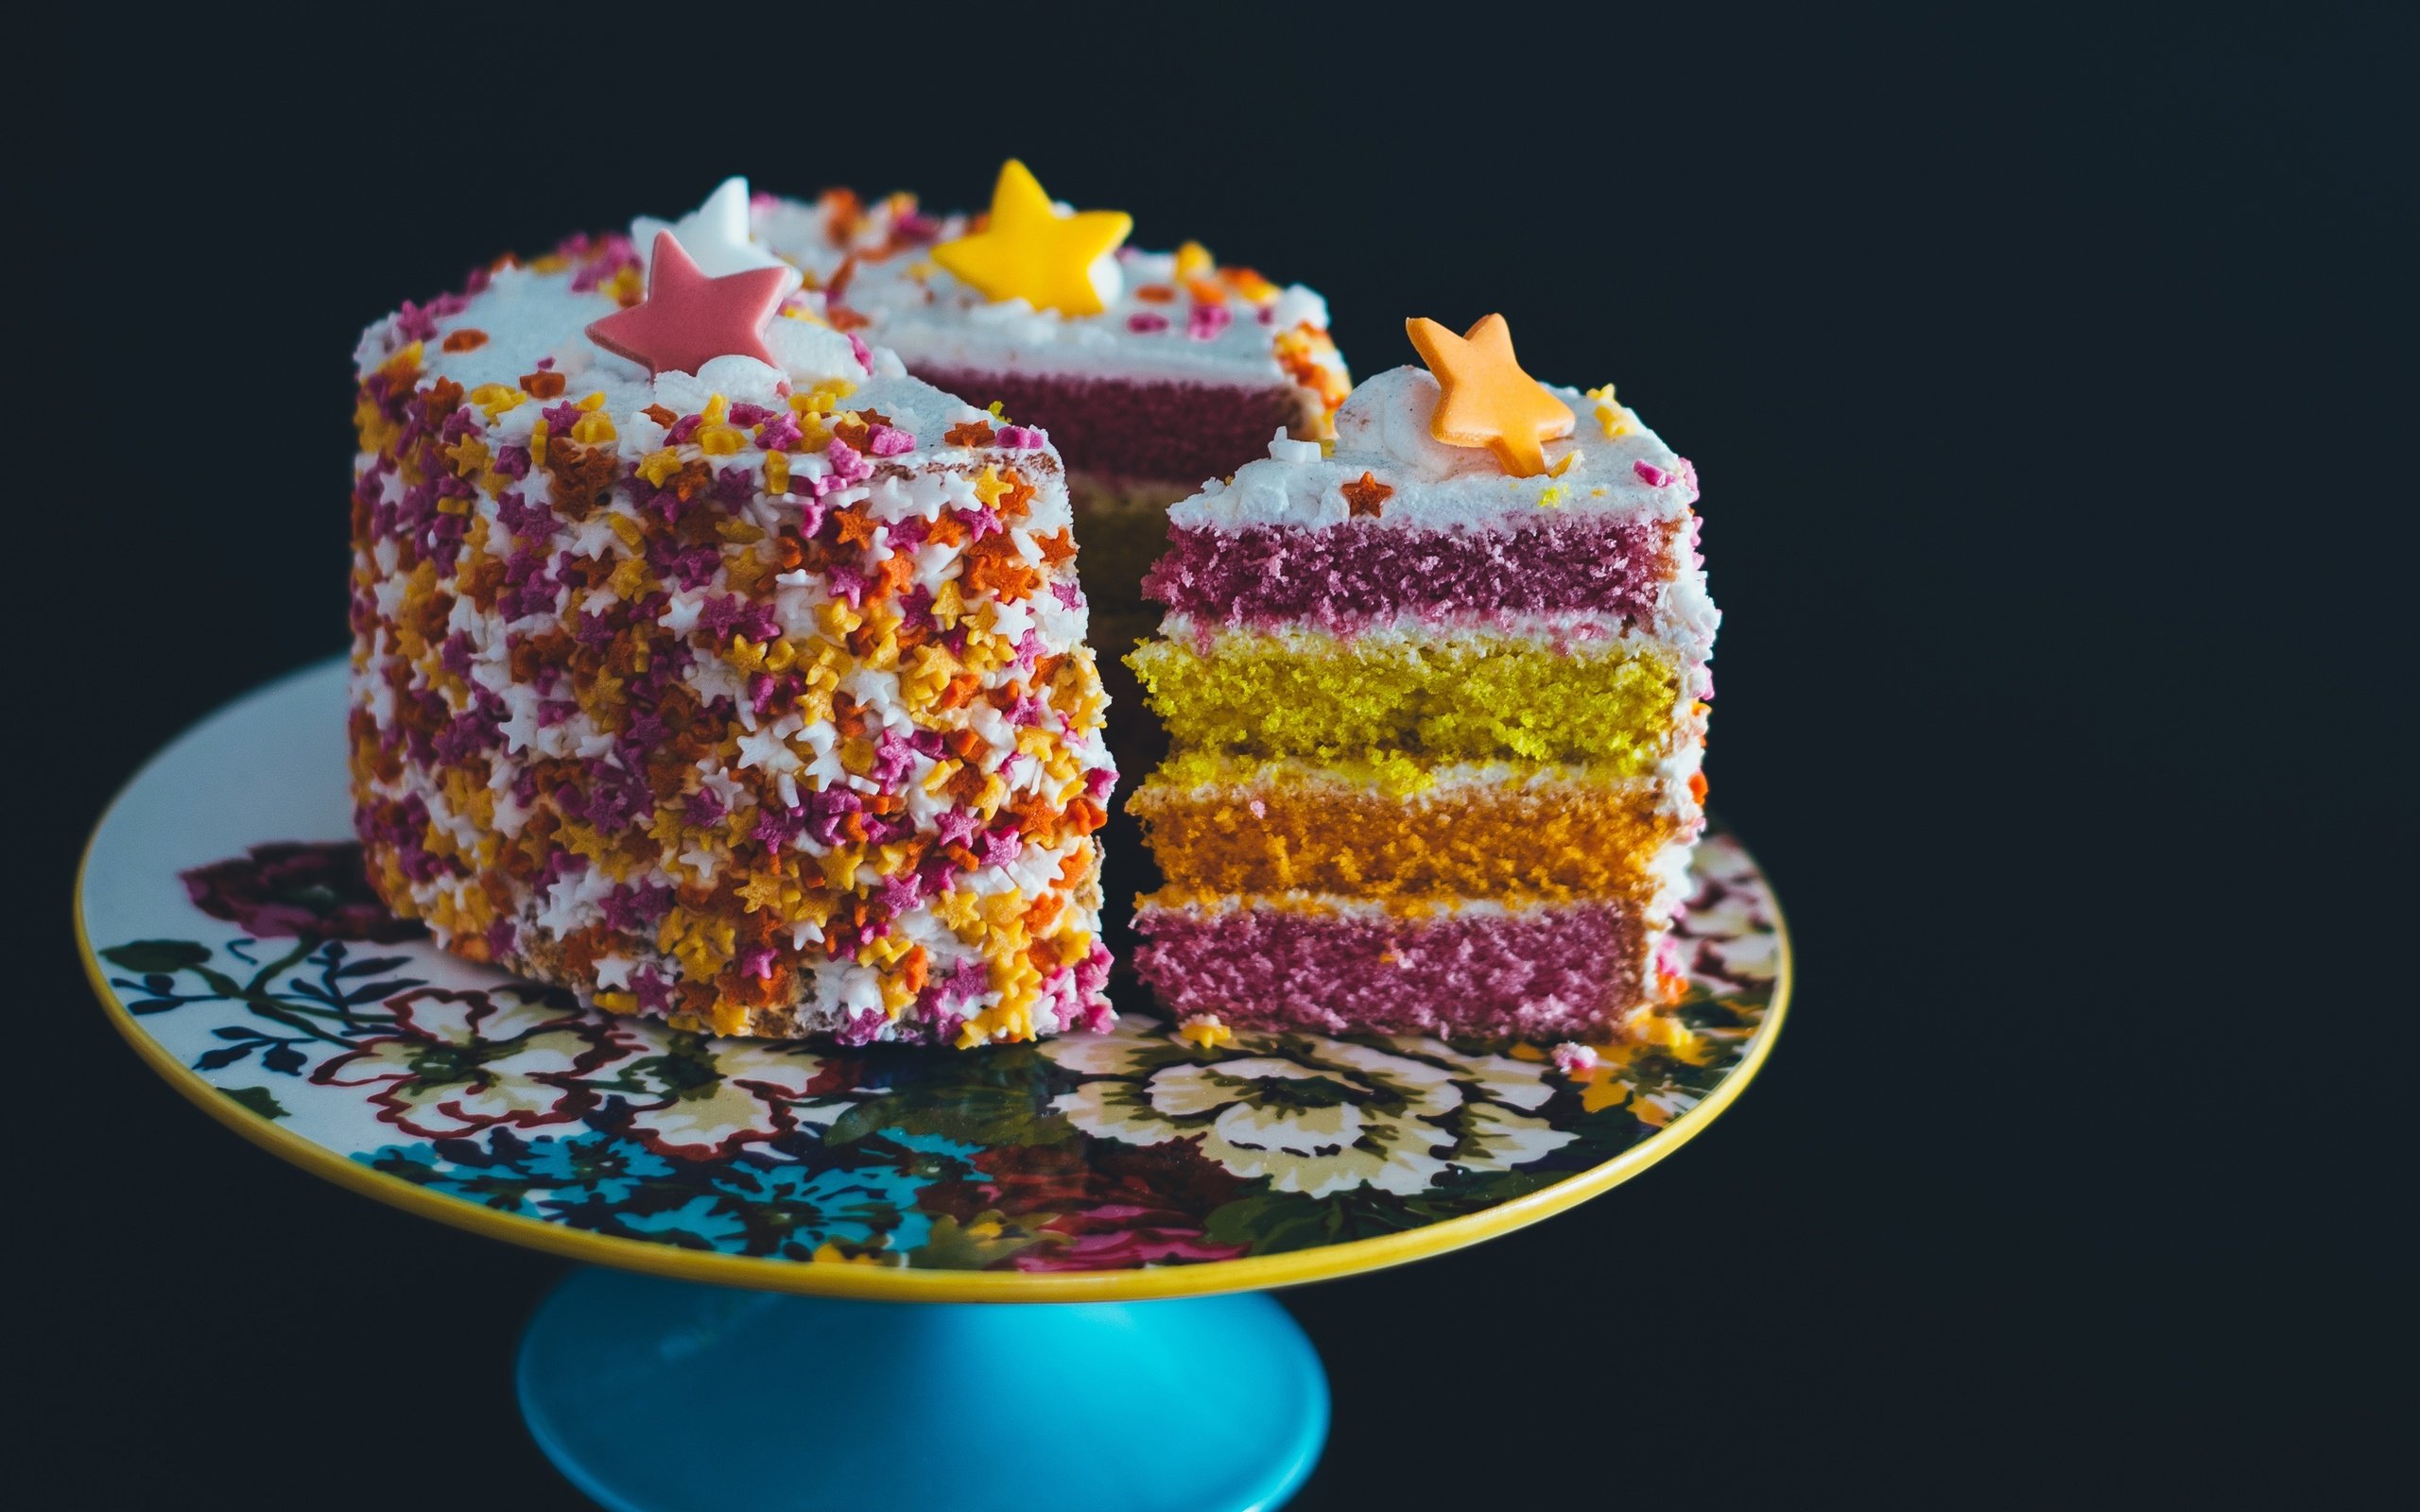 Украшение торта цветным сахаром